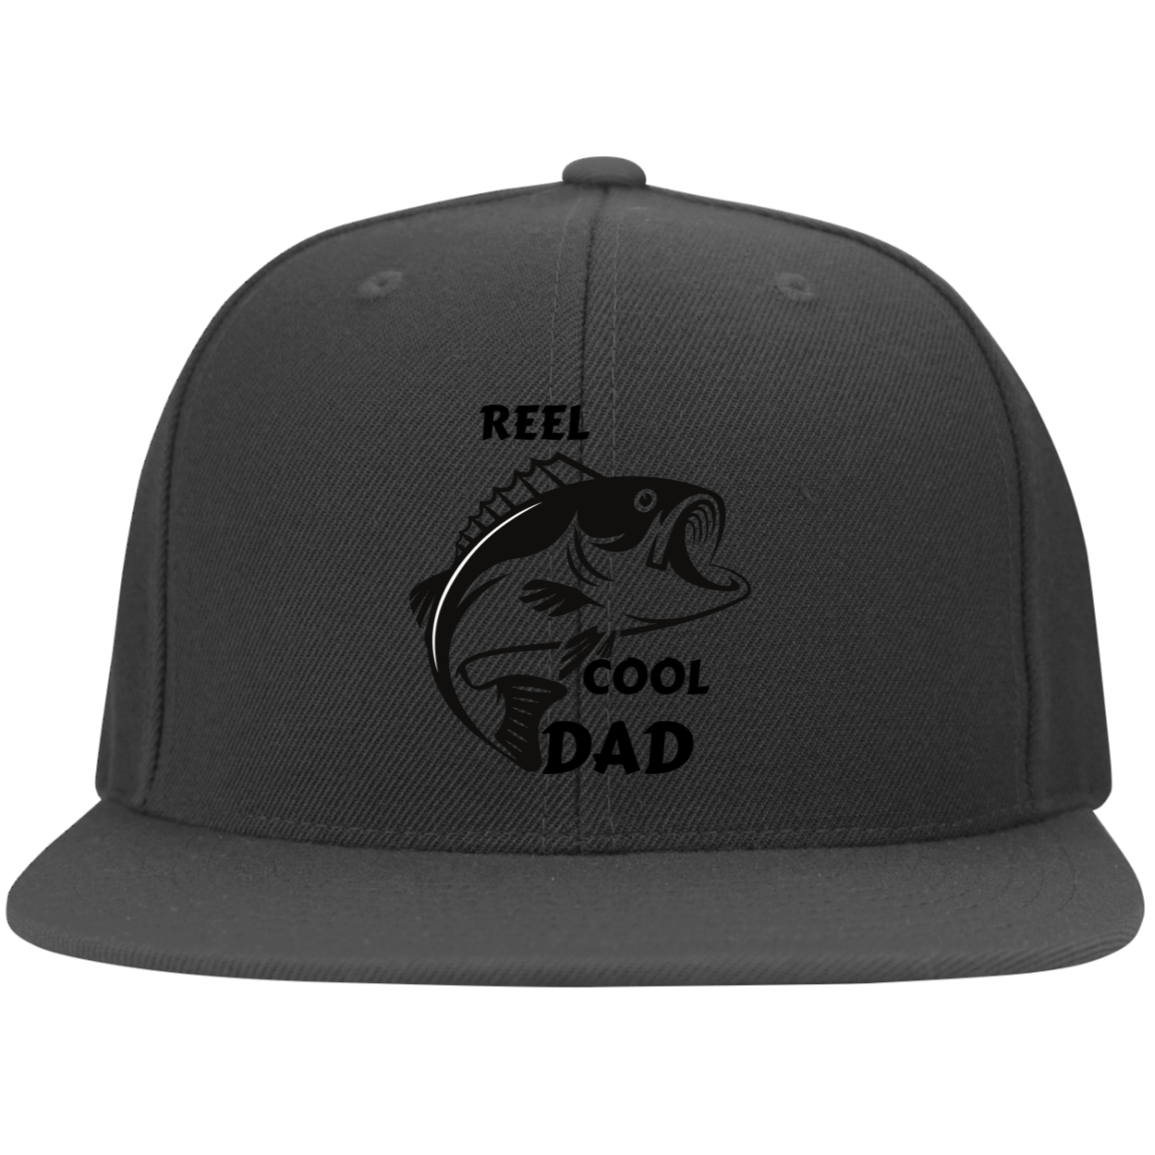 Reel Cool DAD -  Flat Bill Twill Flex fit Cap